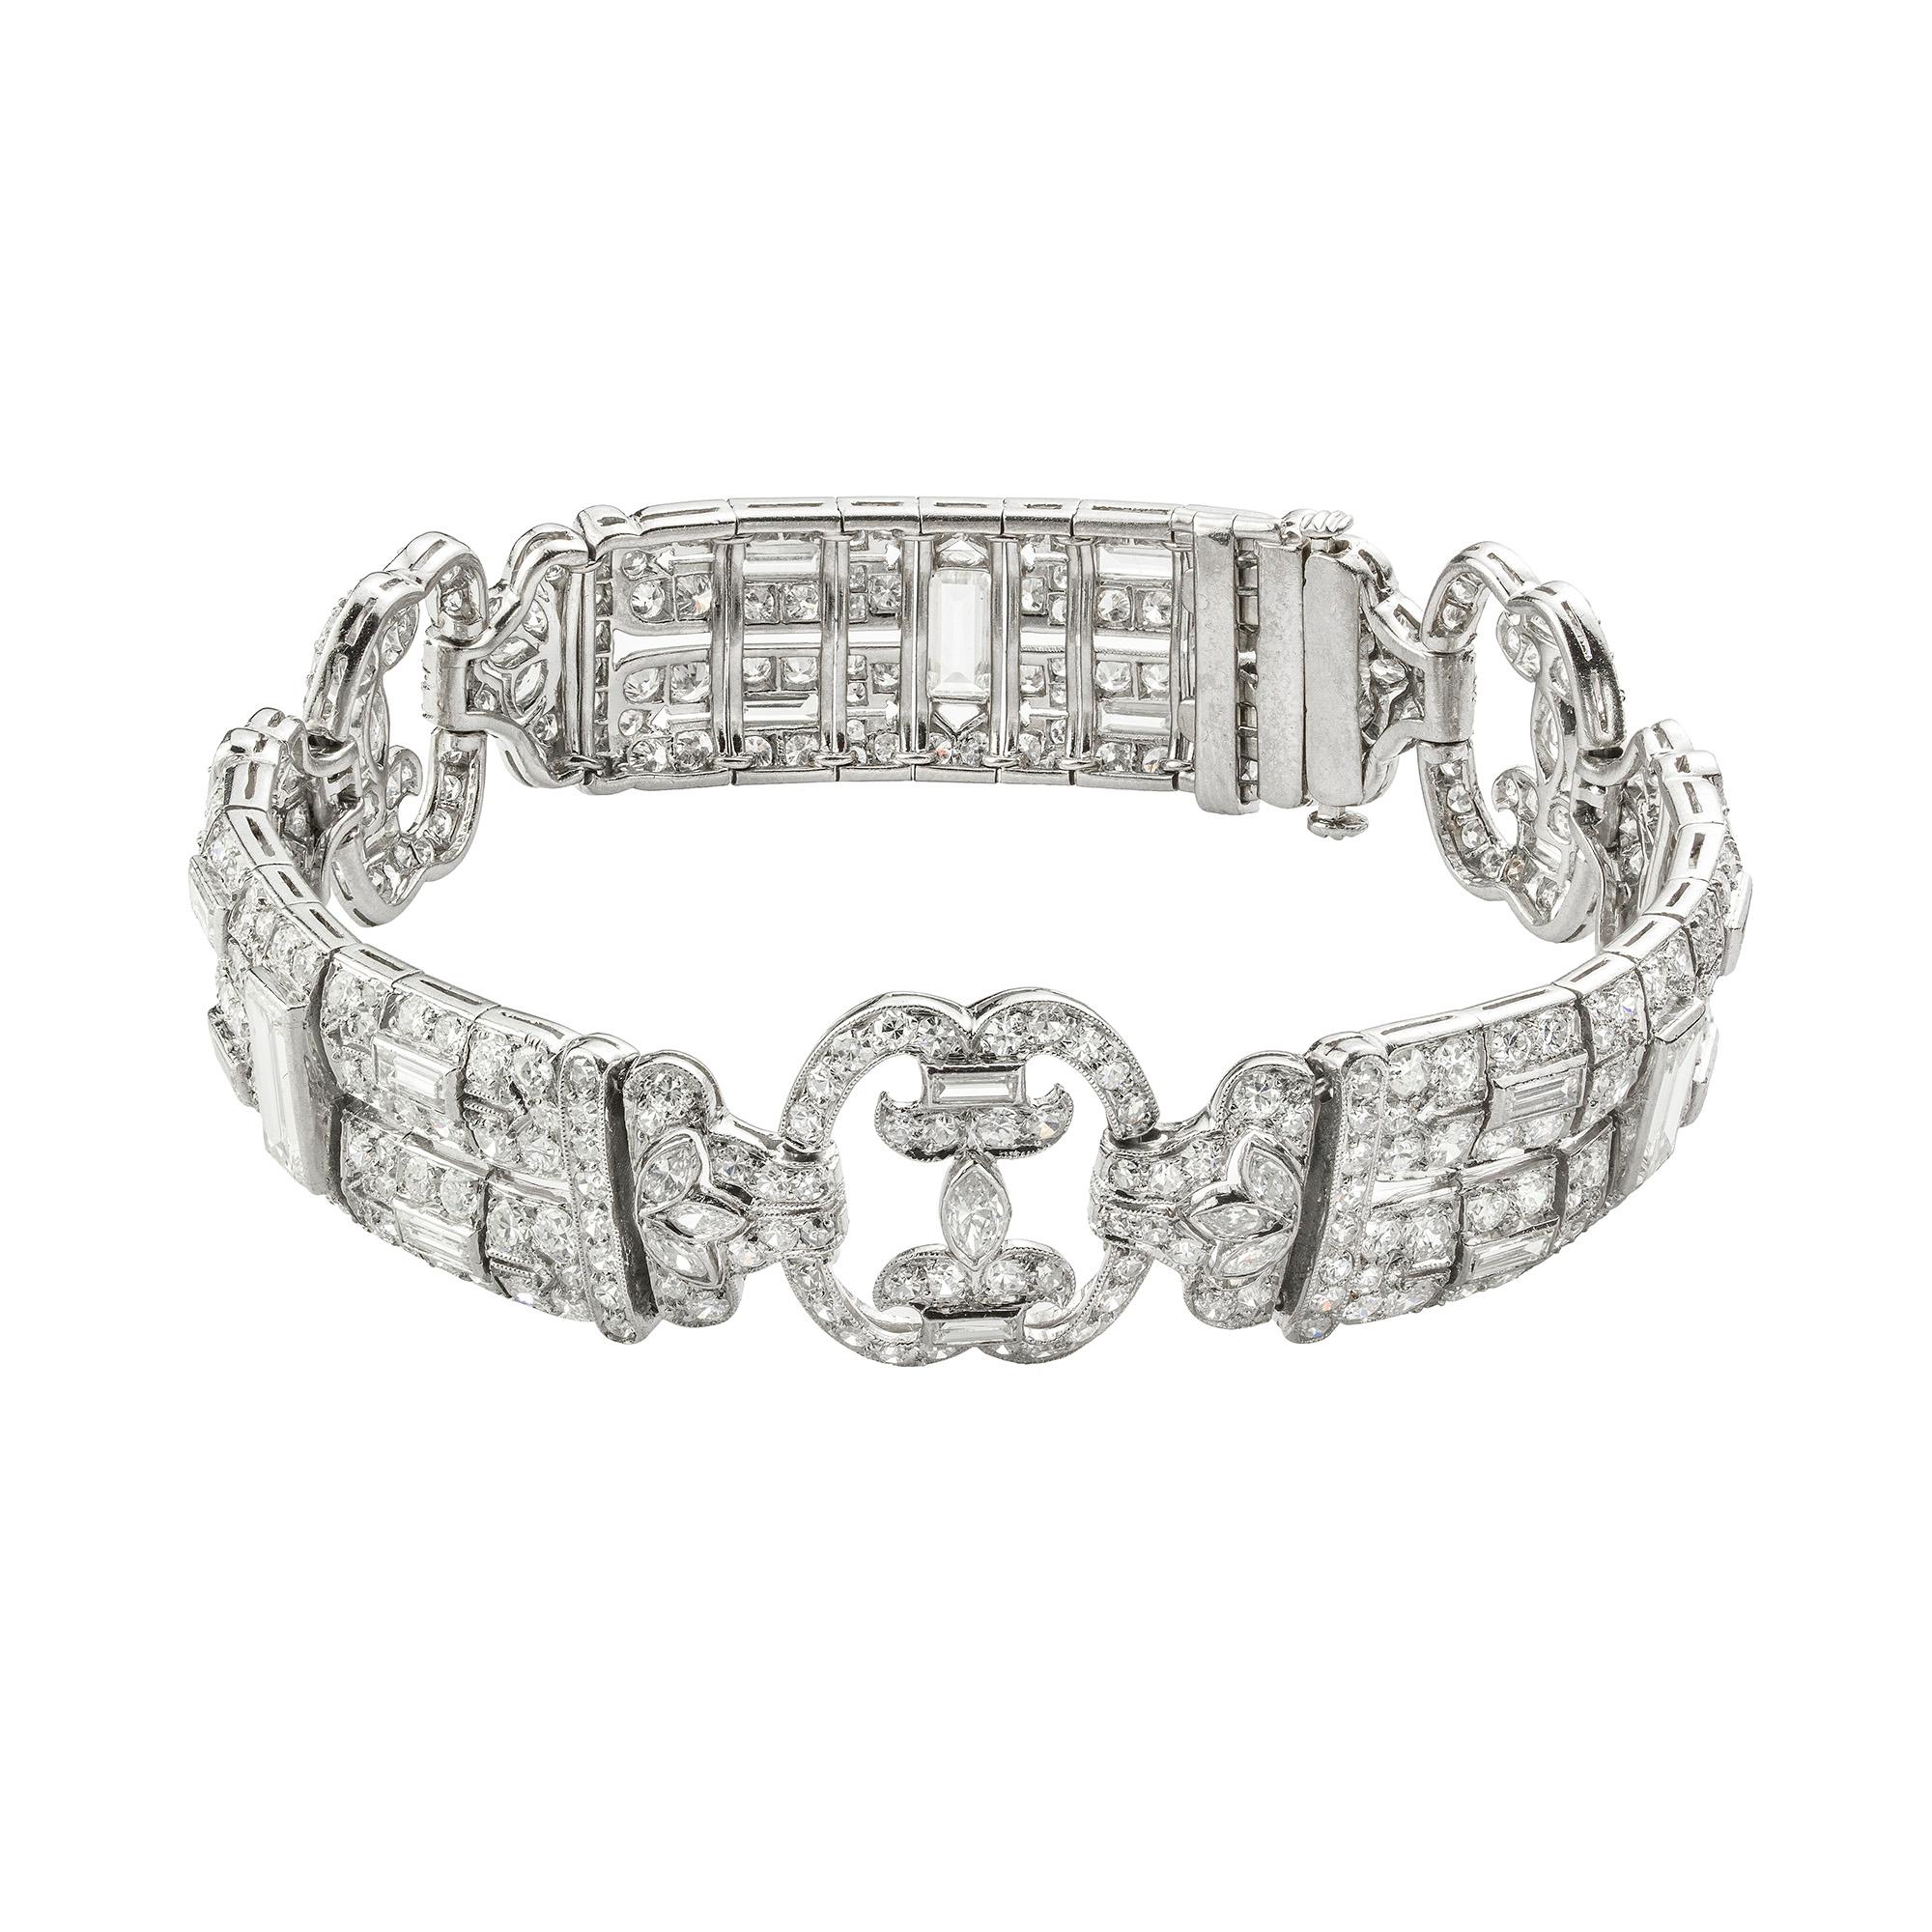 Dieses exquisite Armband stammt aus der Kollektion von Bentley & Skinner, dem Londoner Juwelierhaus, das sowohl Ihrer Majestät der Königin als auch Seiner Königlichen Hoheit dem Prinzen von Wales zur Verfügung steht. Dieses um 1925 geschaffene Stück